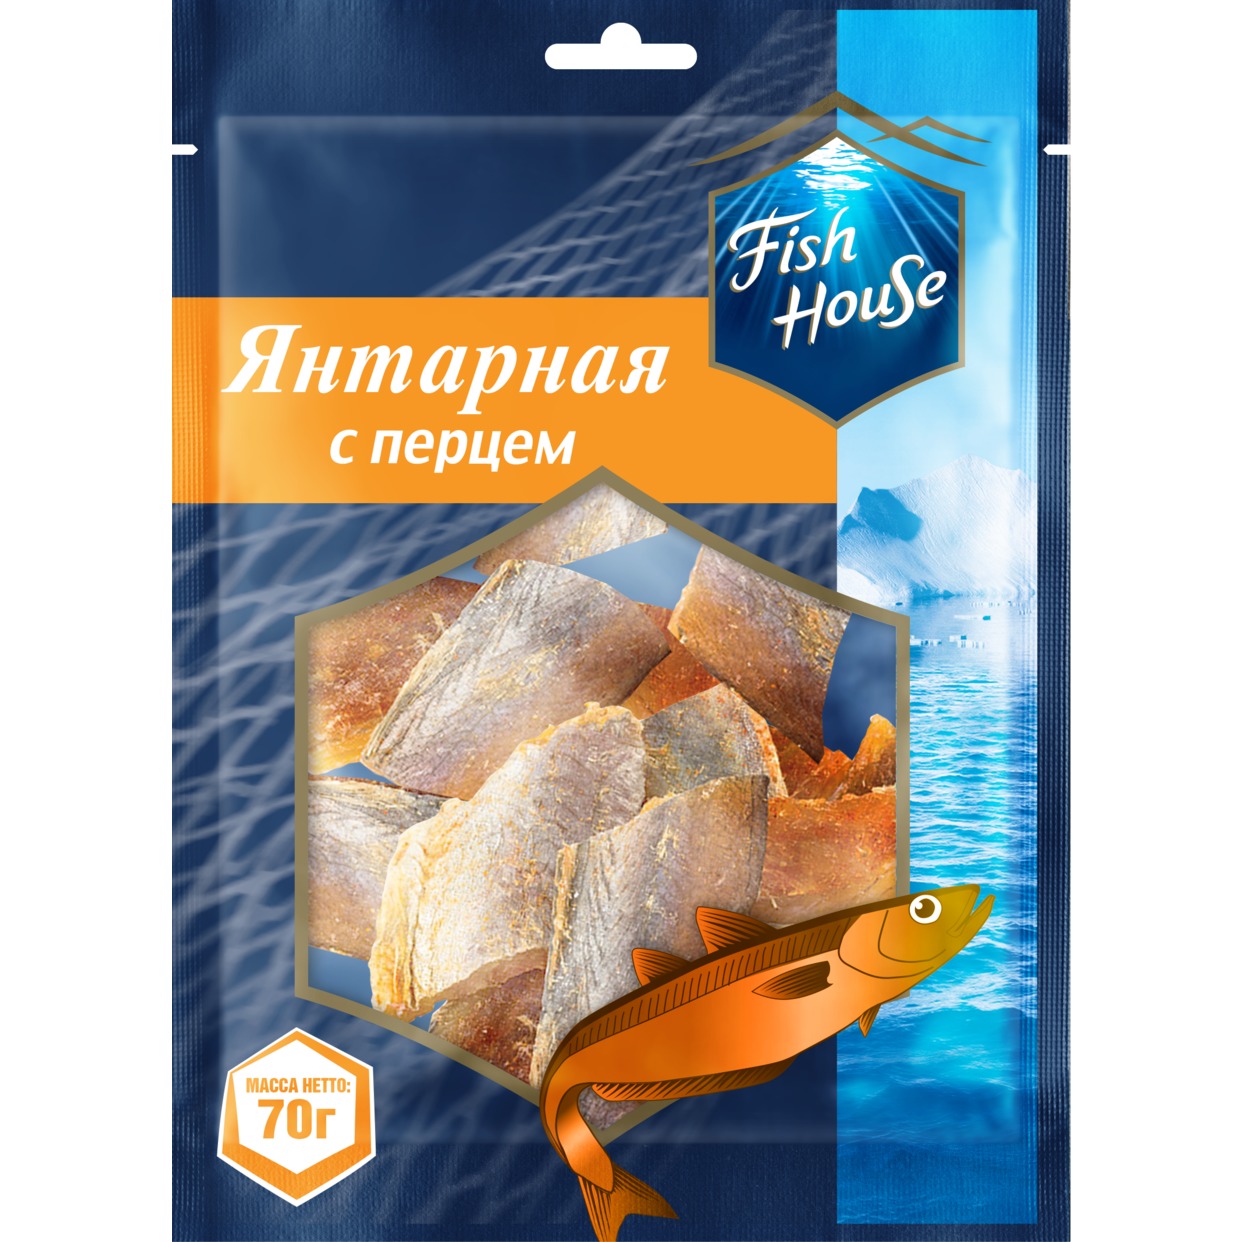 Рыбка Fish House Янтарная с перцем 70 г по акции в Пятерочке